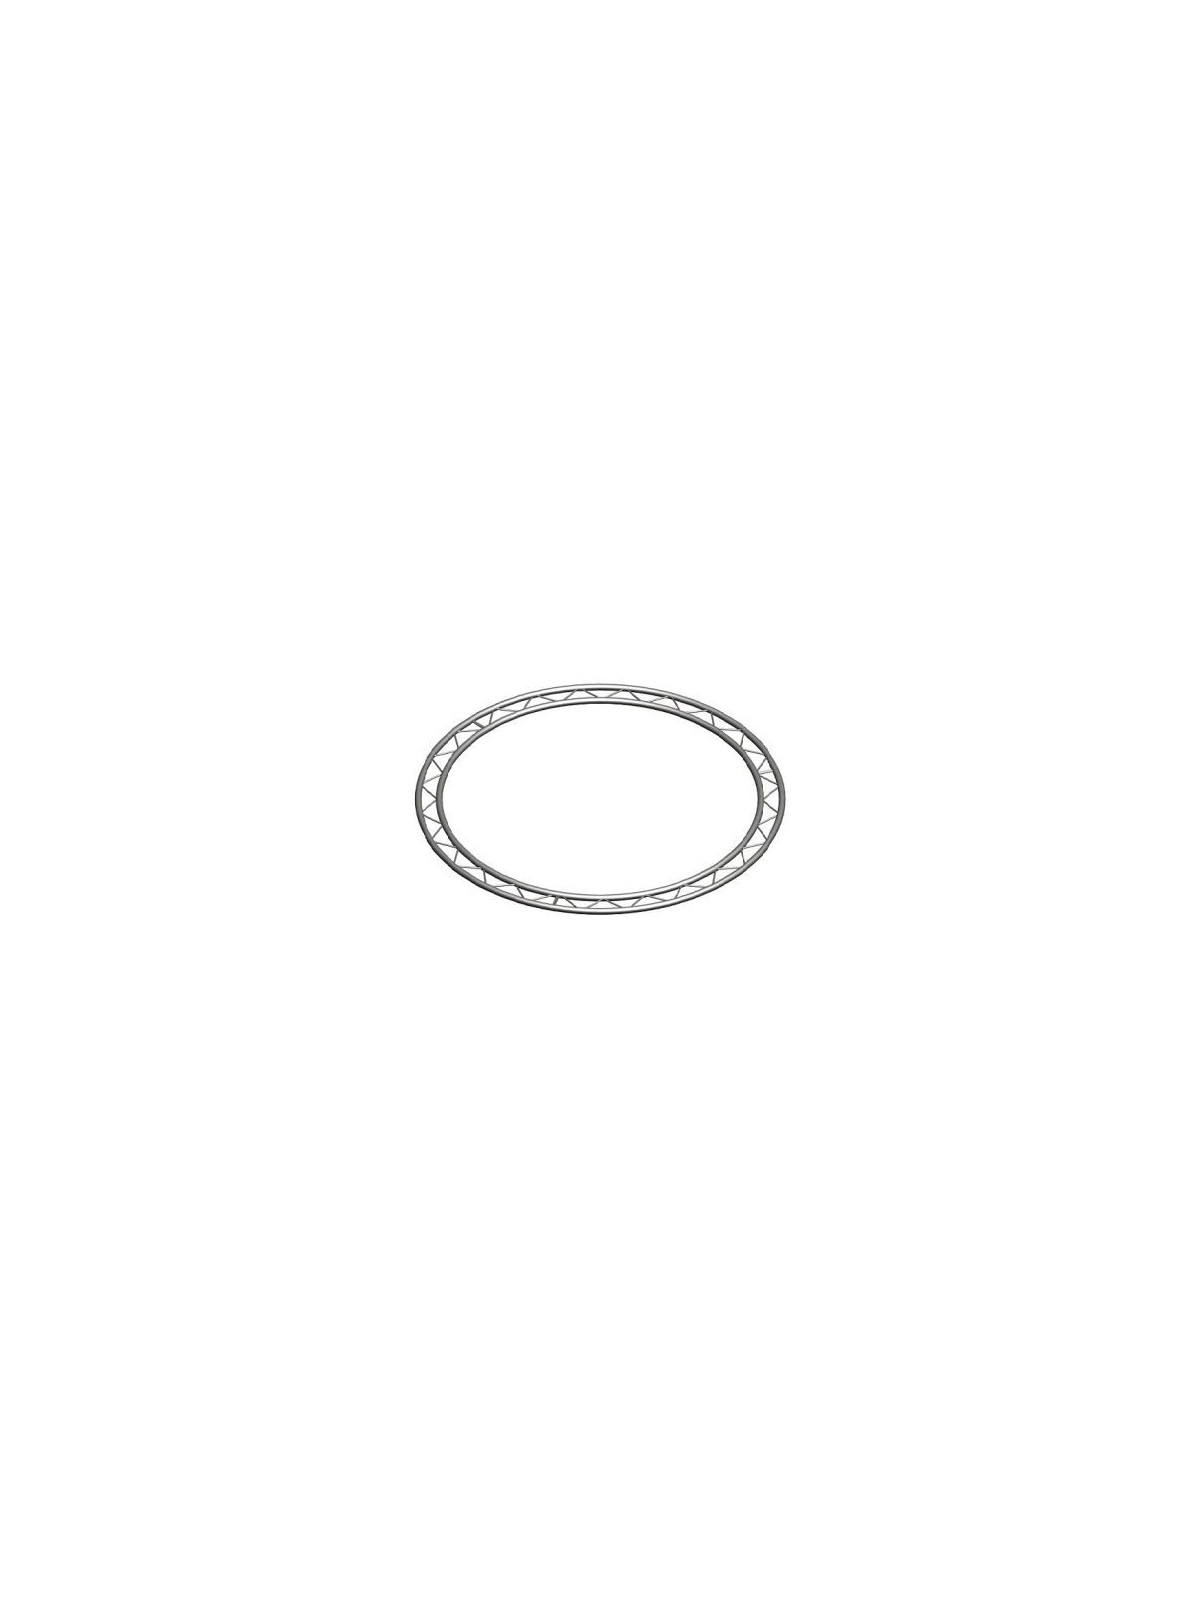 Asd cercle 2.50m Echelle plate 290